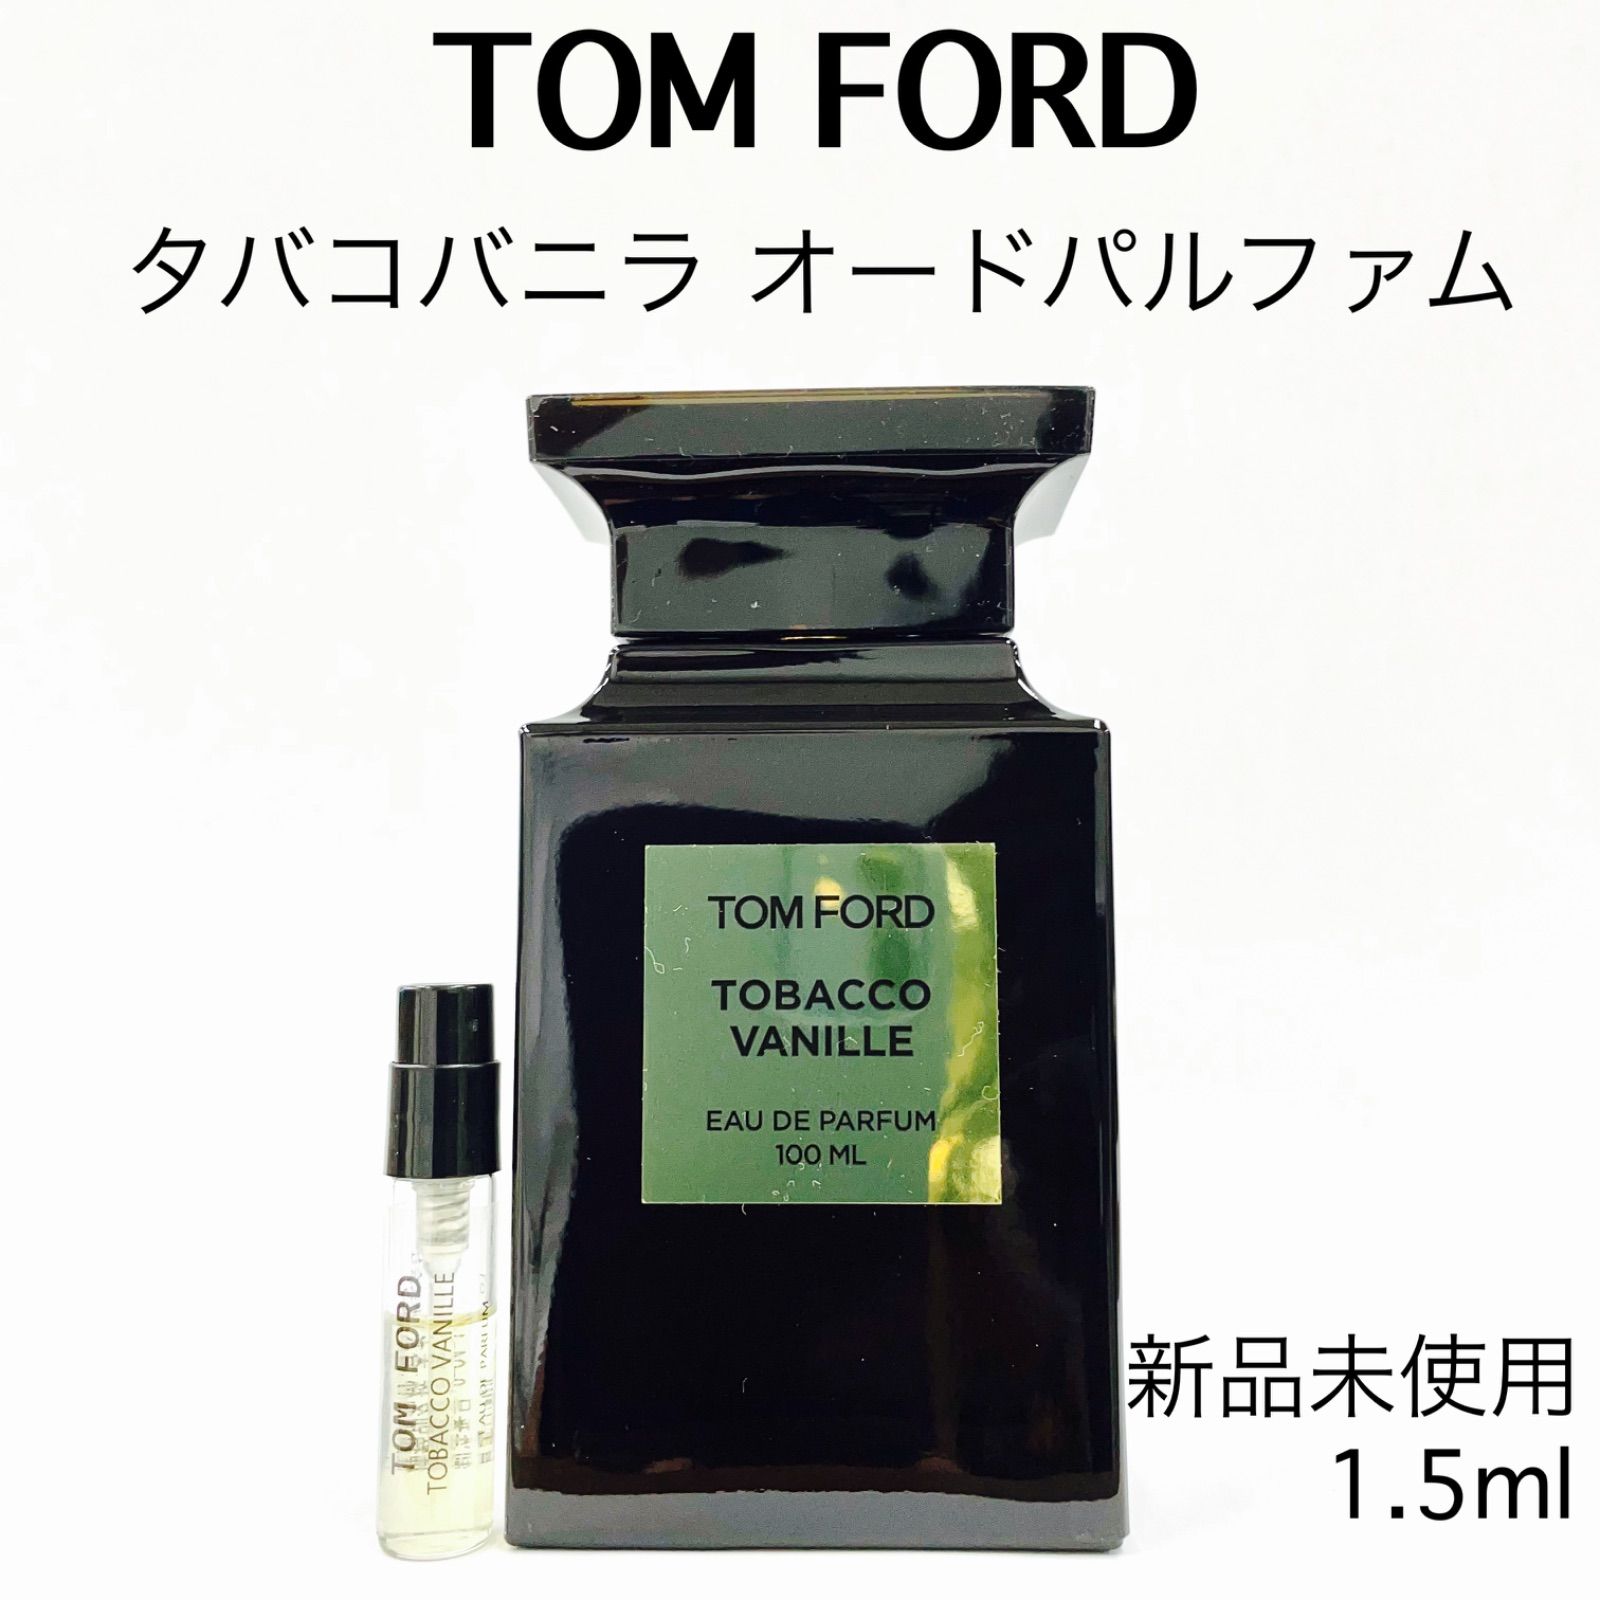 トムフォード タバコ バニラ オードパルファム 100ml #トムフォード 